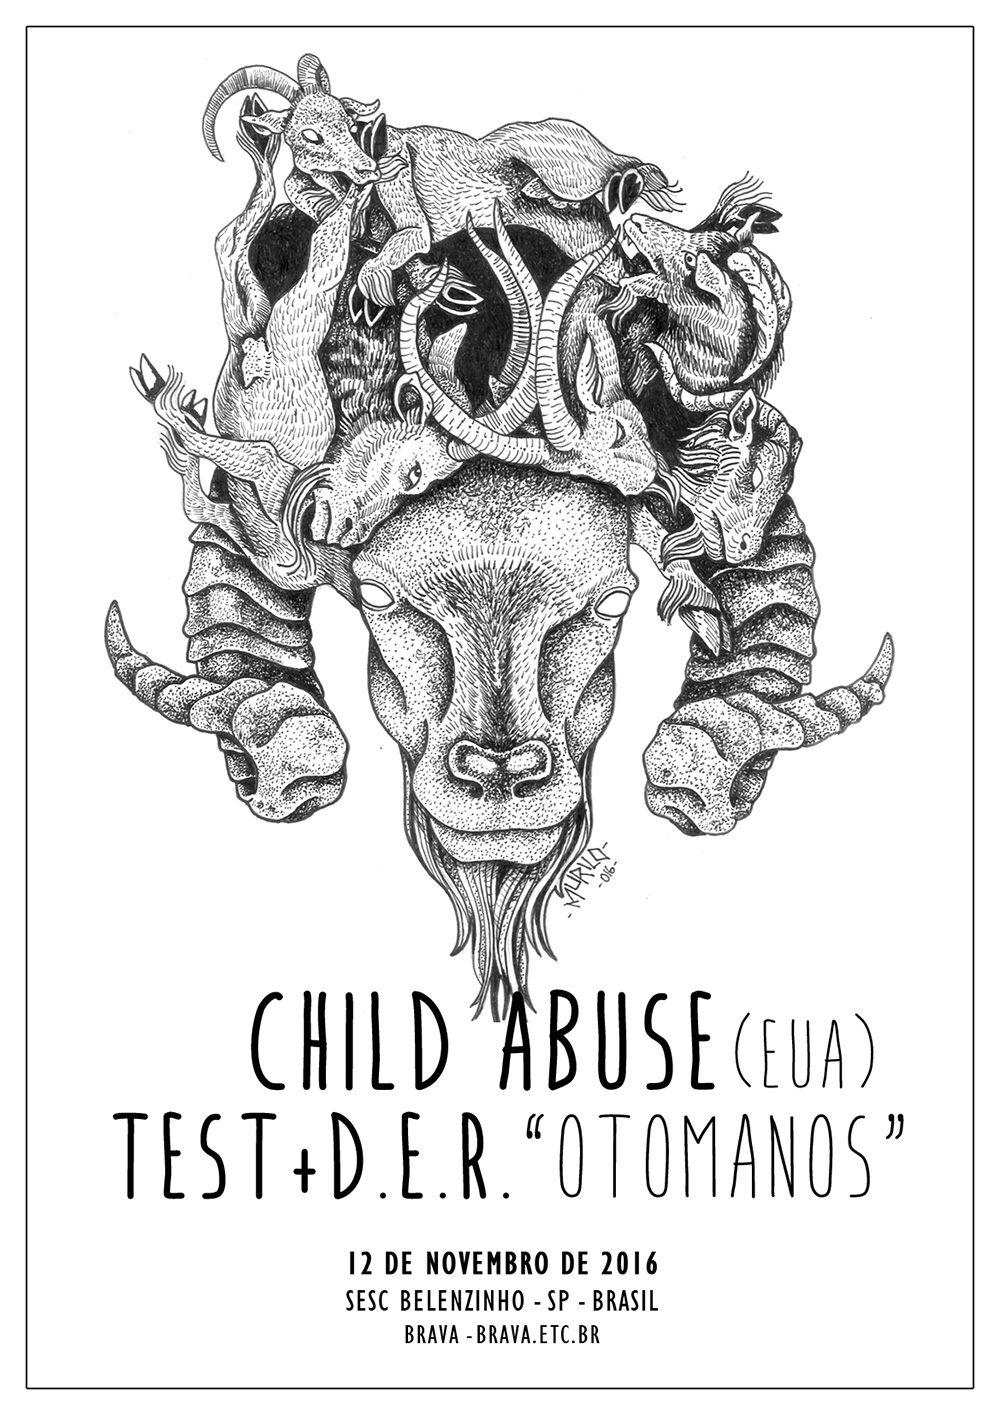 Child Abuse (EUA) e Test + D.E.R. “Otomanos” no Música Extrema, do SESC Belenzinho /SP